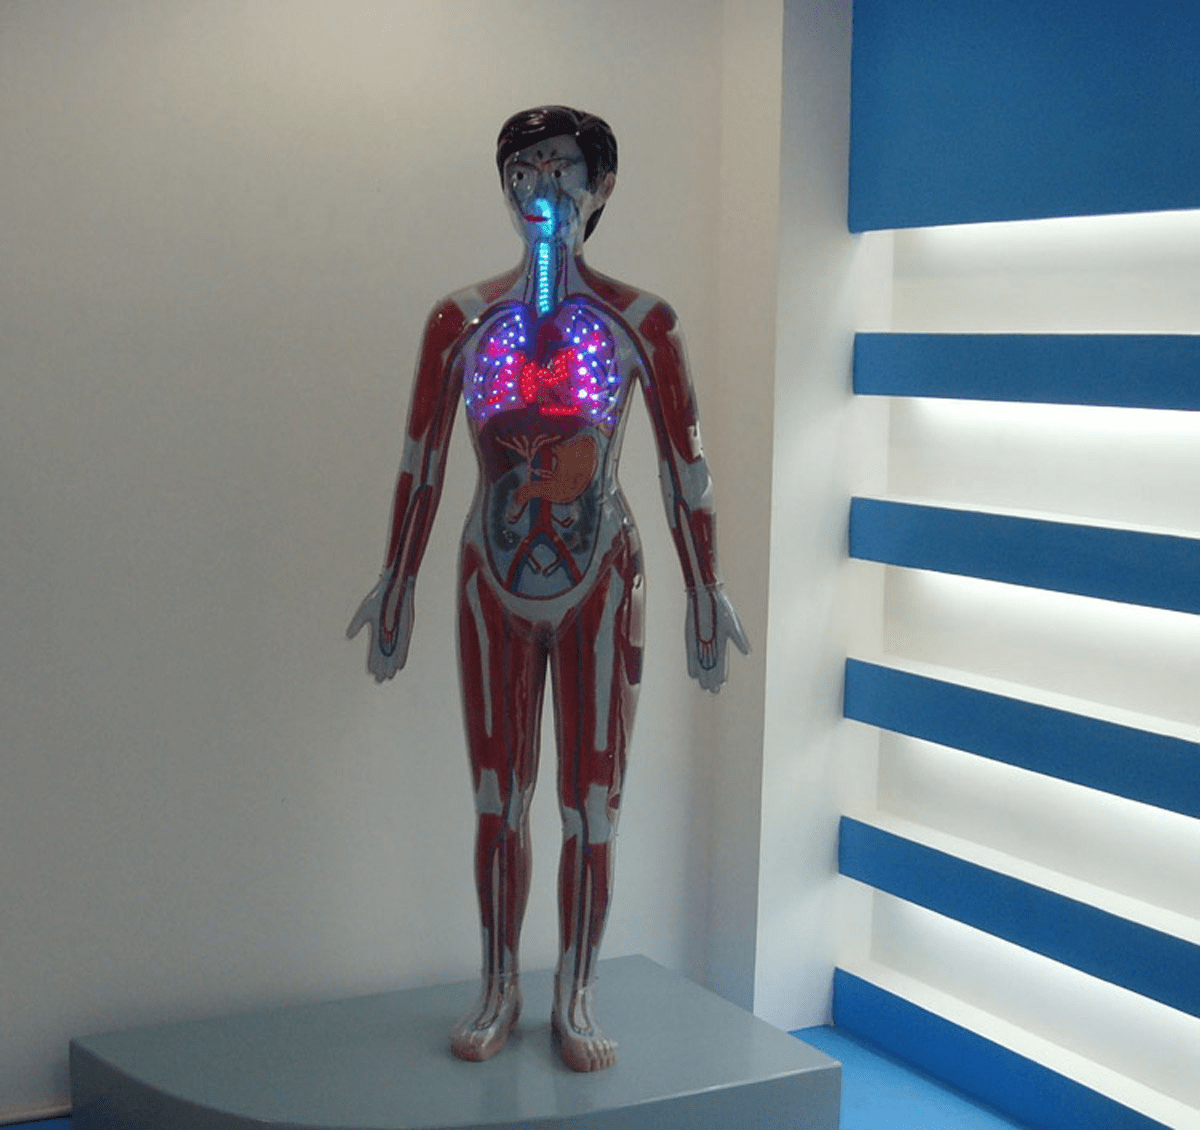 新兴科技产品,能够模拟人体在吸毒后给身体各项器官带来的伤害和变化